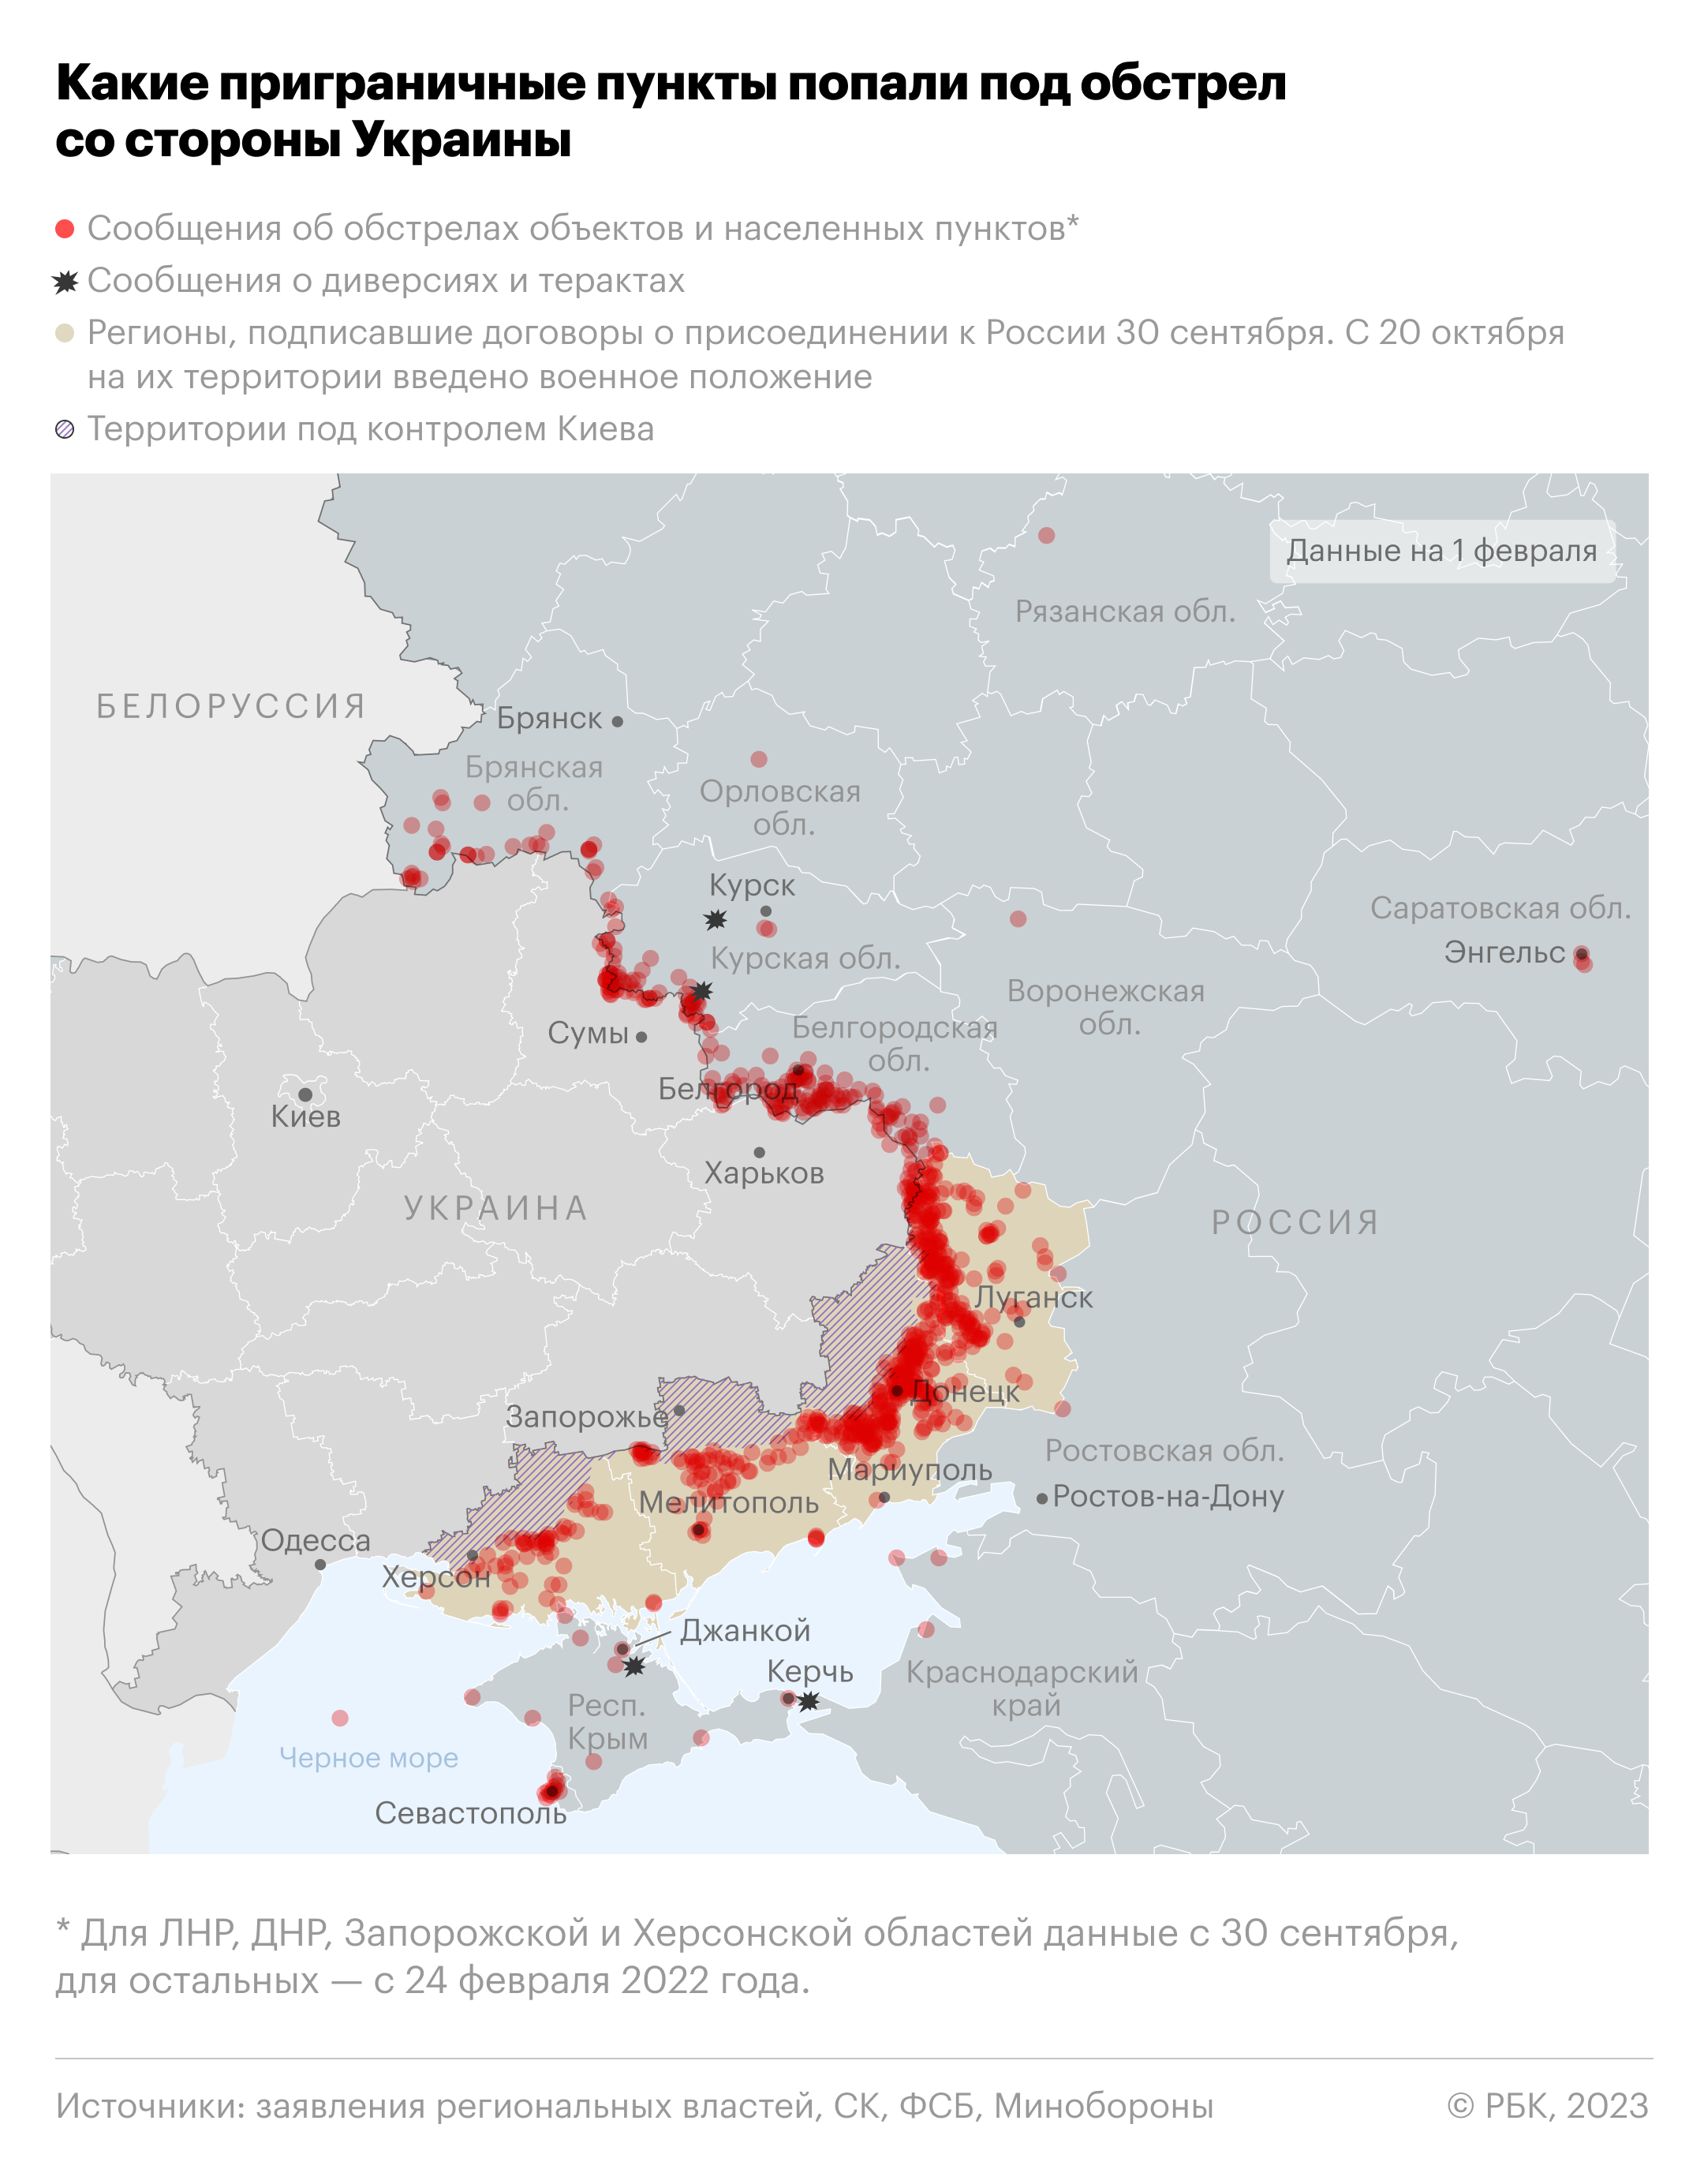 Курский губернатор сообщил о раненой при обстреле села с Украины